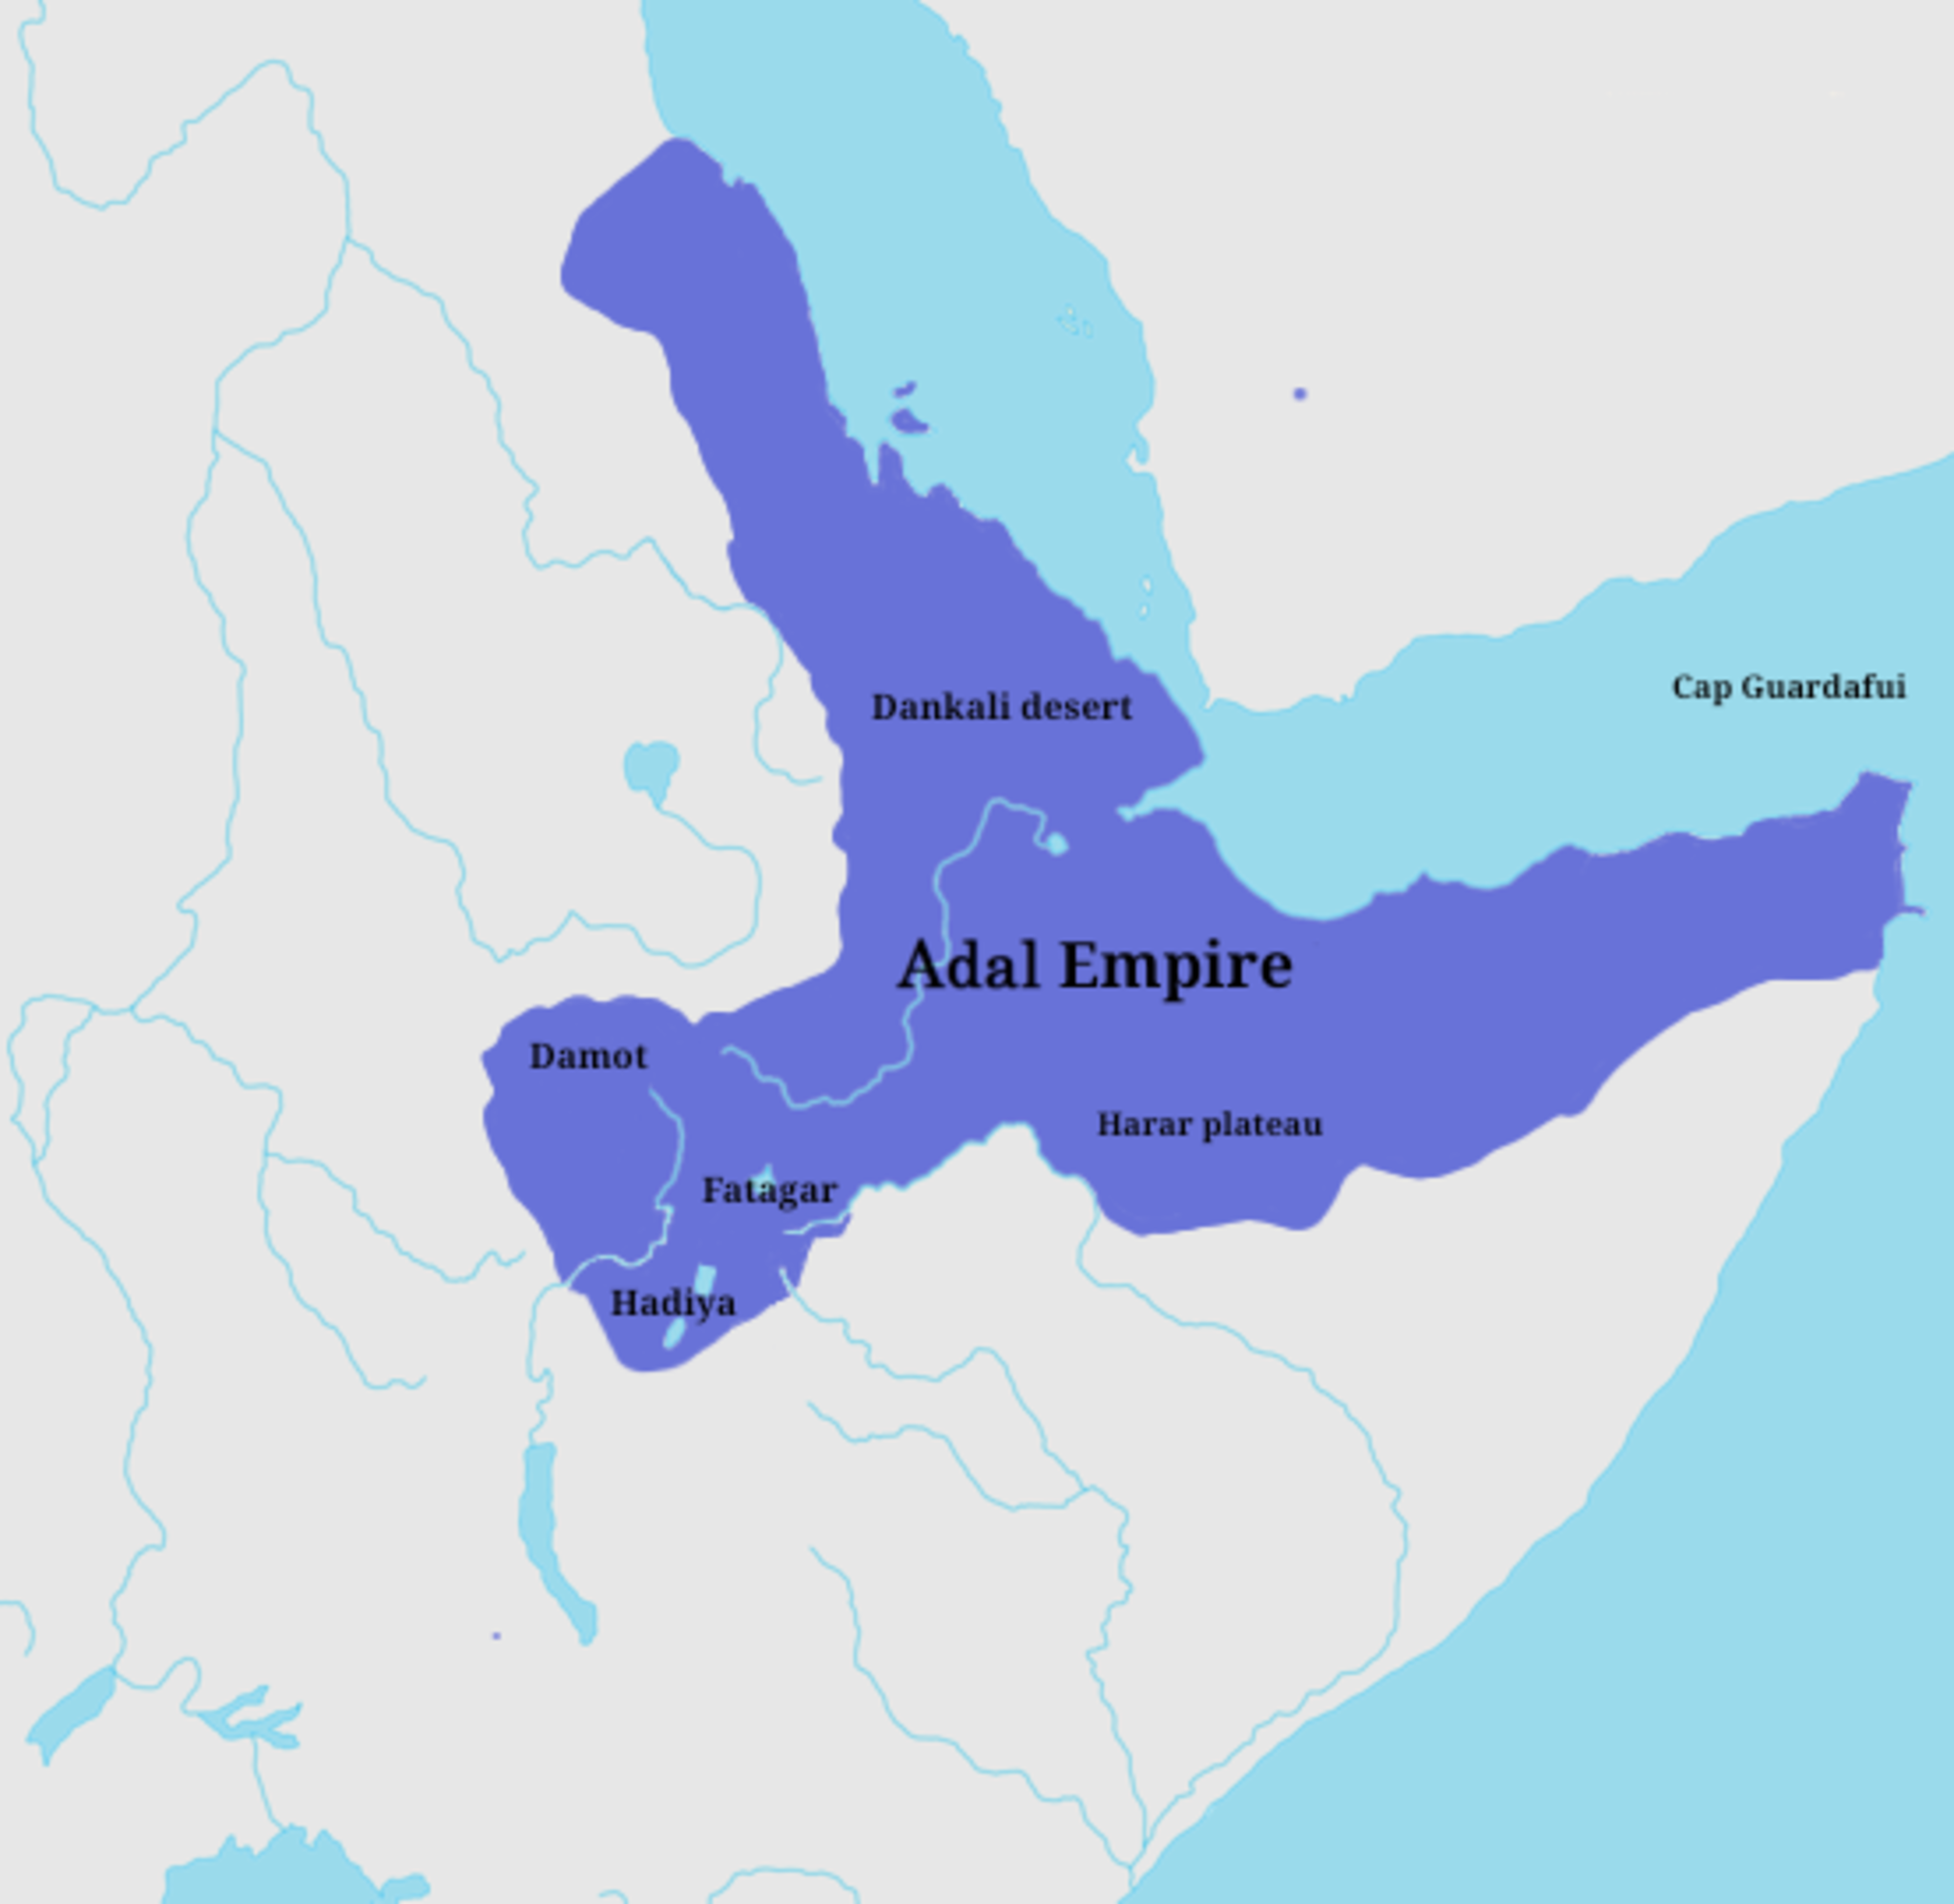 Adal Empire